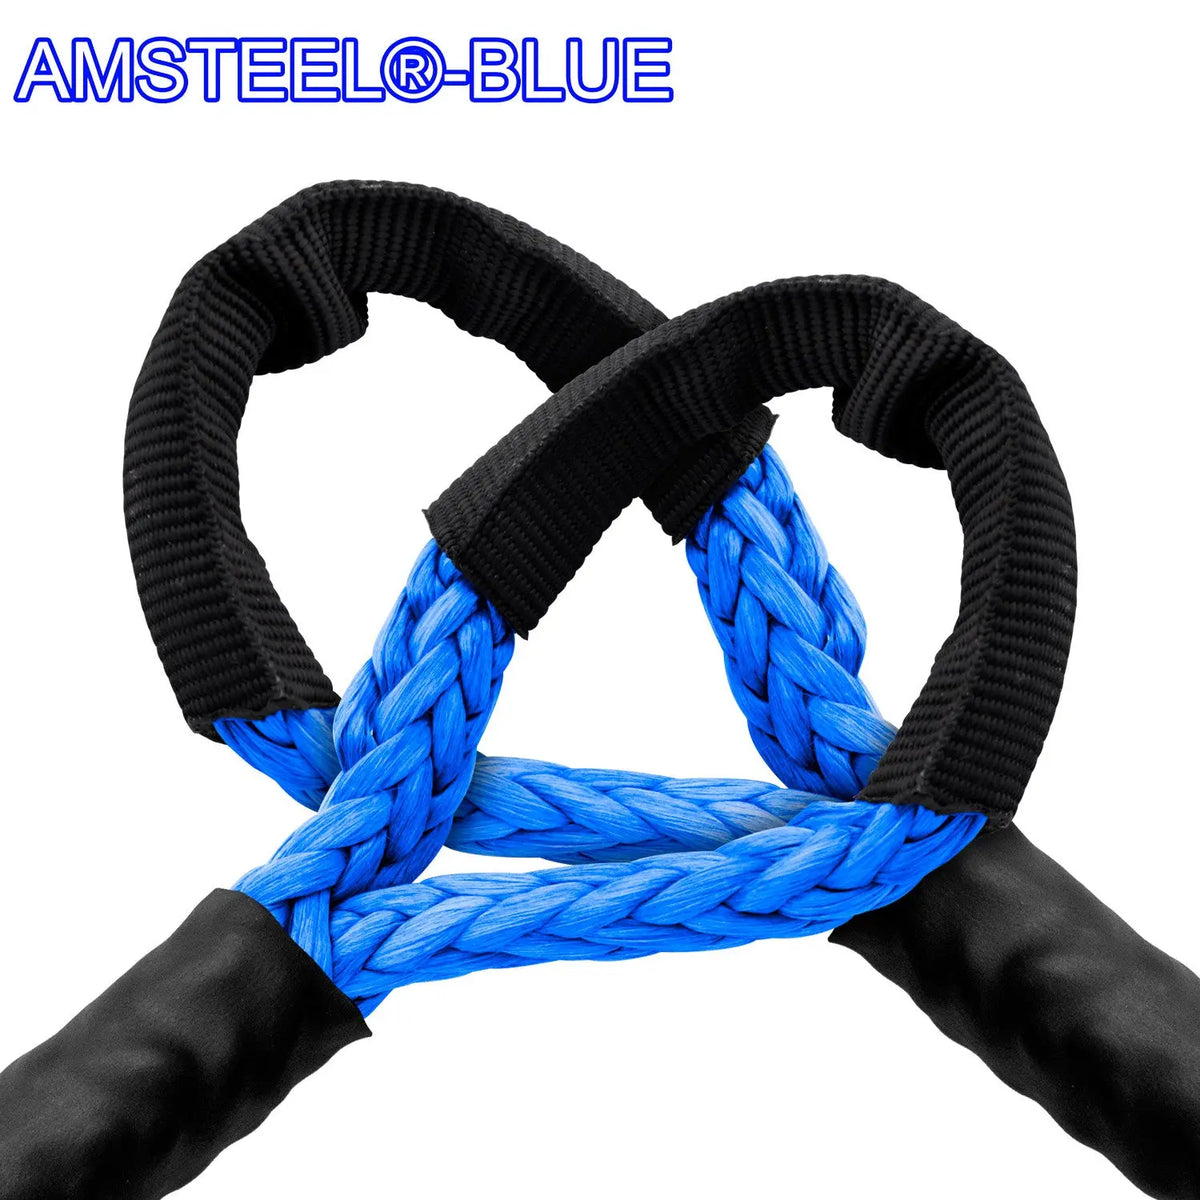 7/16" Extension - AmSteel Blue Winch Rope Custom Splice - AmSteel Blue